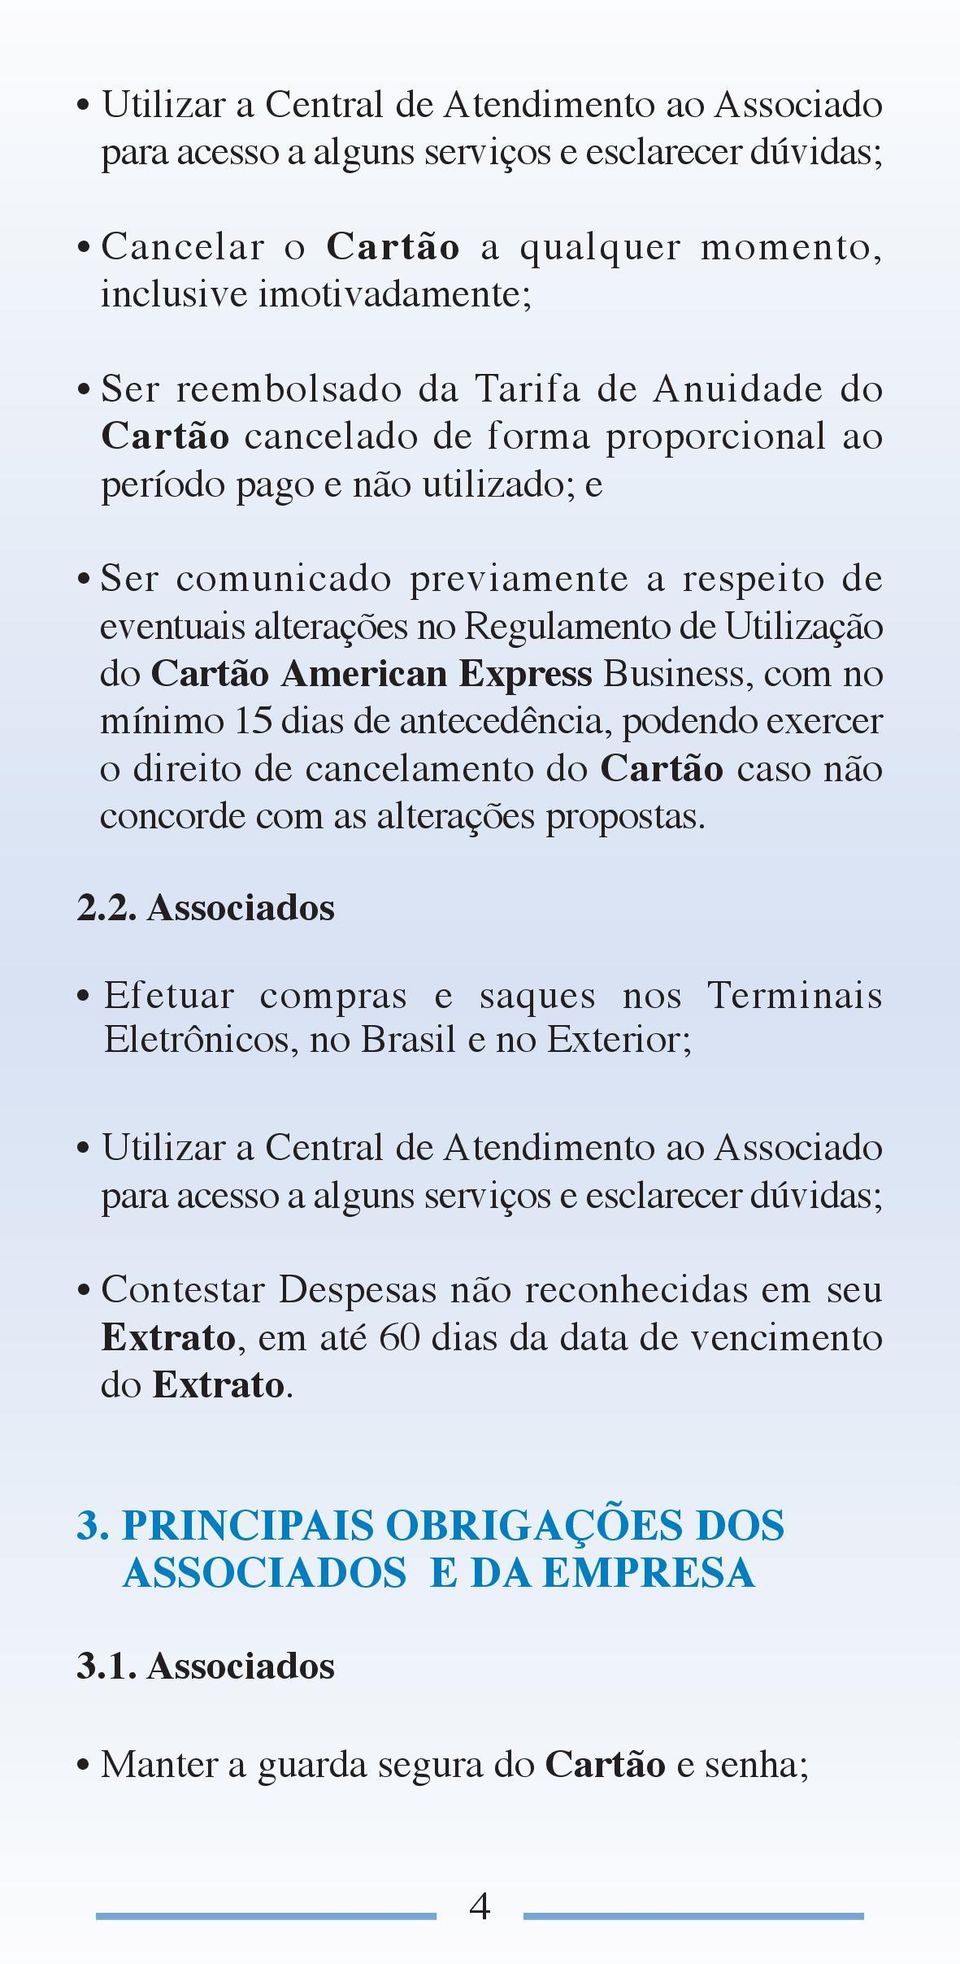 Express Business, com no mínimo 15 dias de antecedência, podendo exercer o direito de cancelamento do Cartão caso não concorde com as alterações propostas. 2.